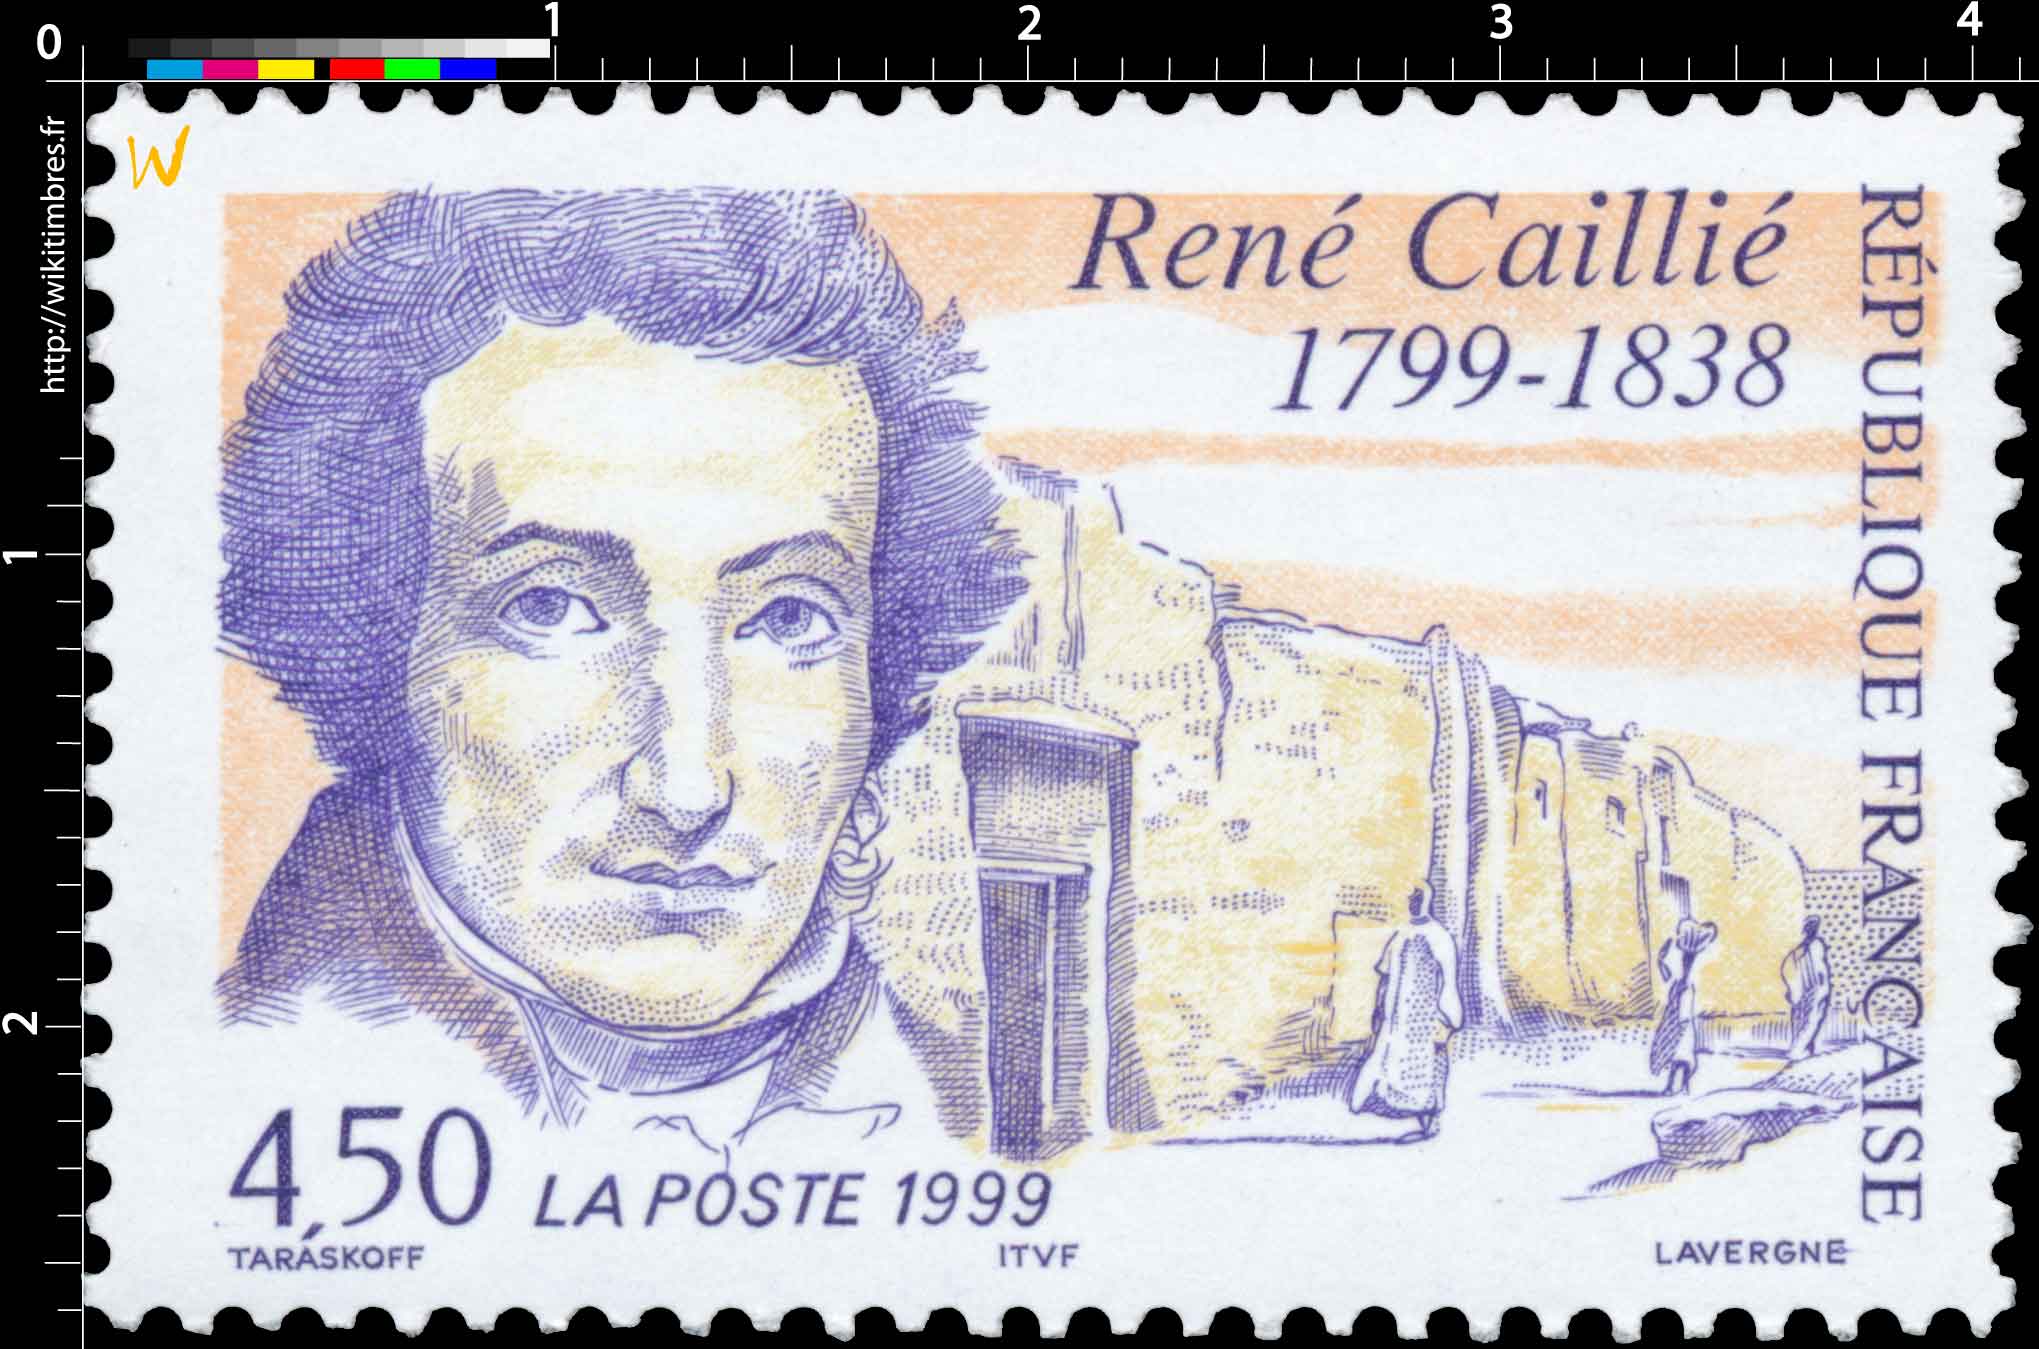 1999 René Caillié 1799-1838